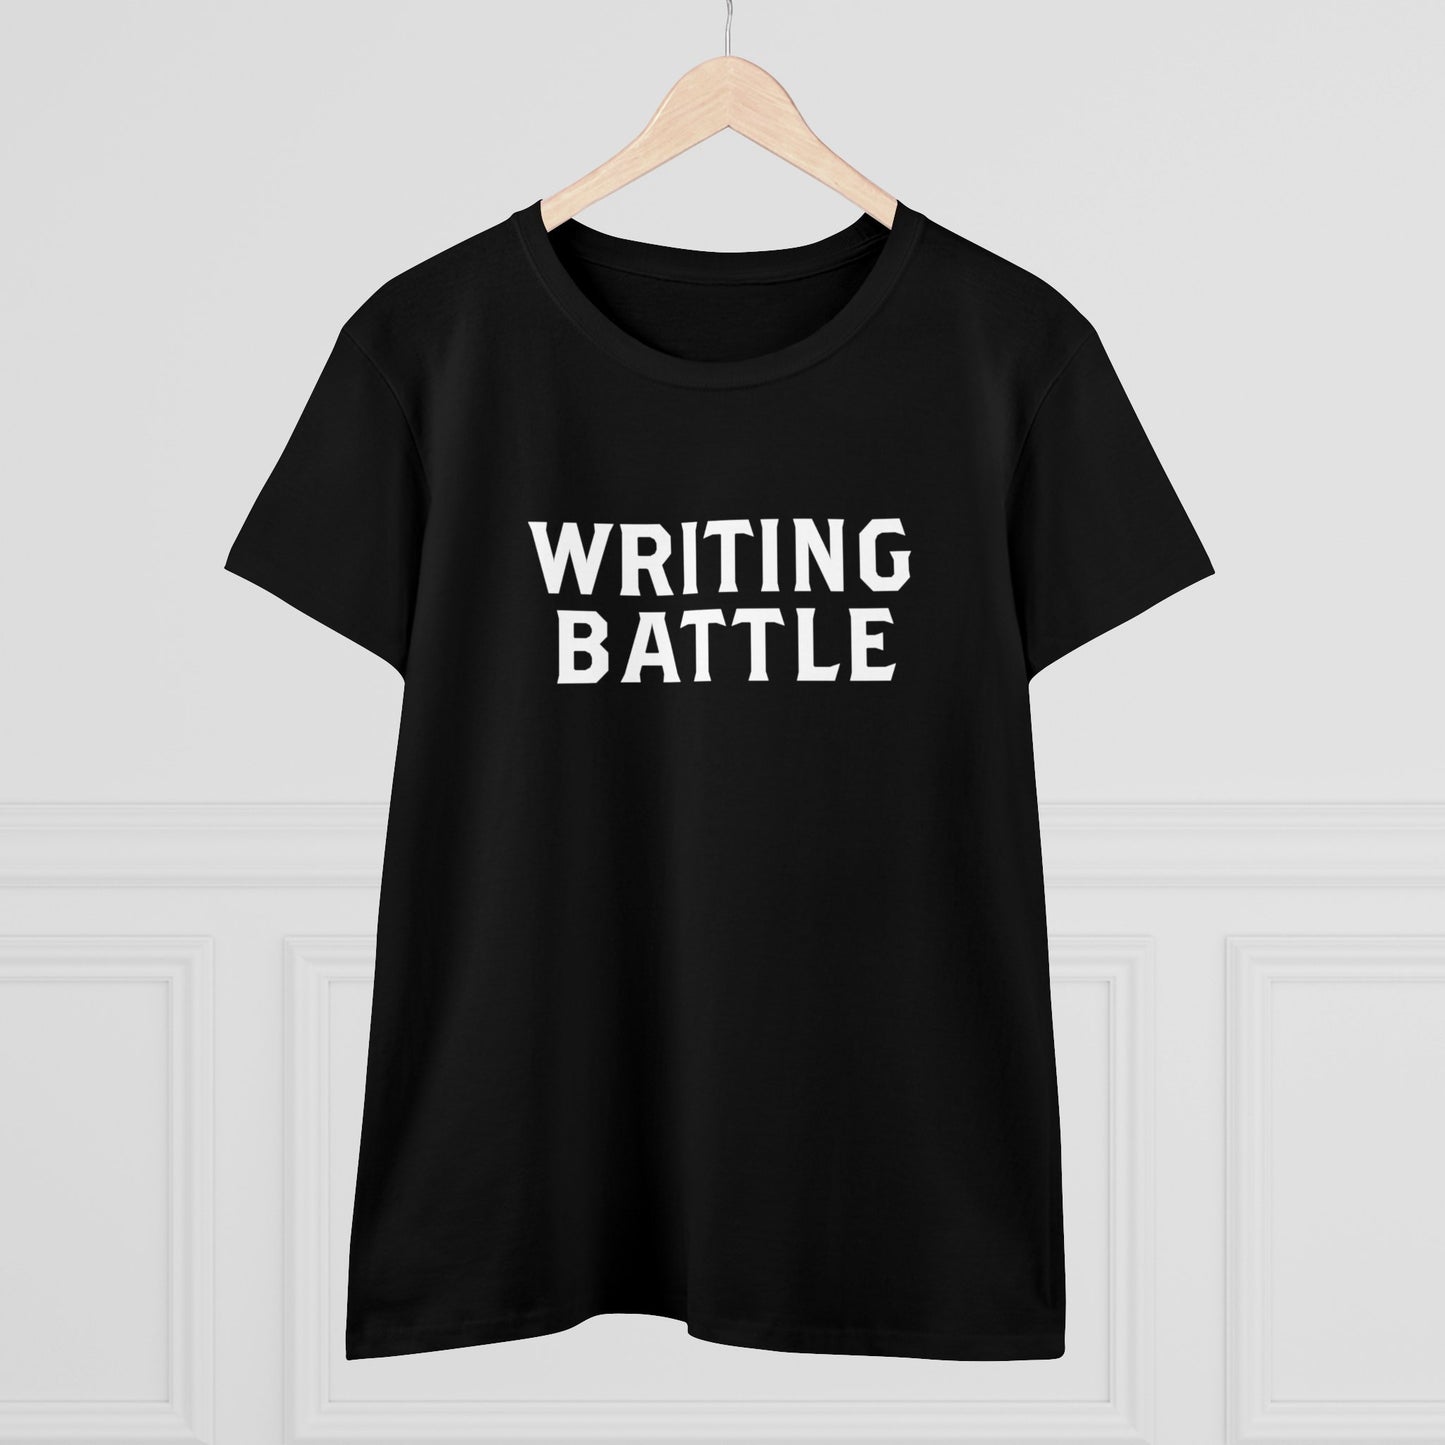 Writing Battle Women's Midweight Cotton Tee - Aus/NZ